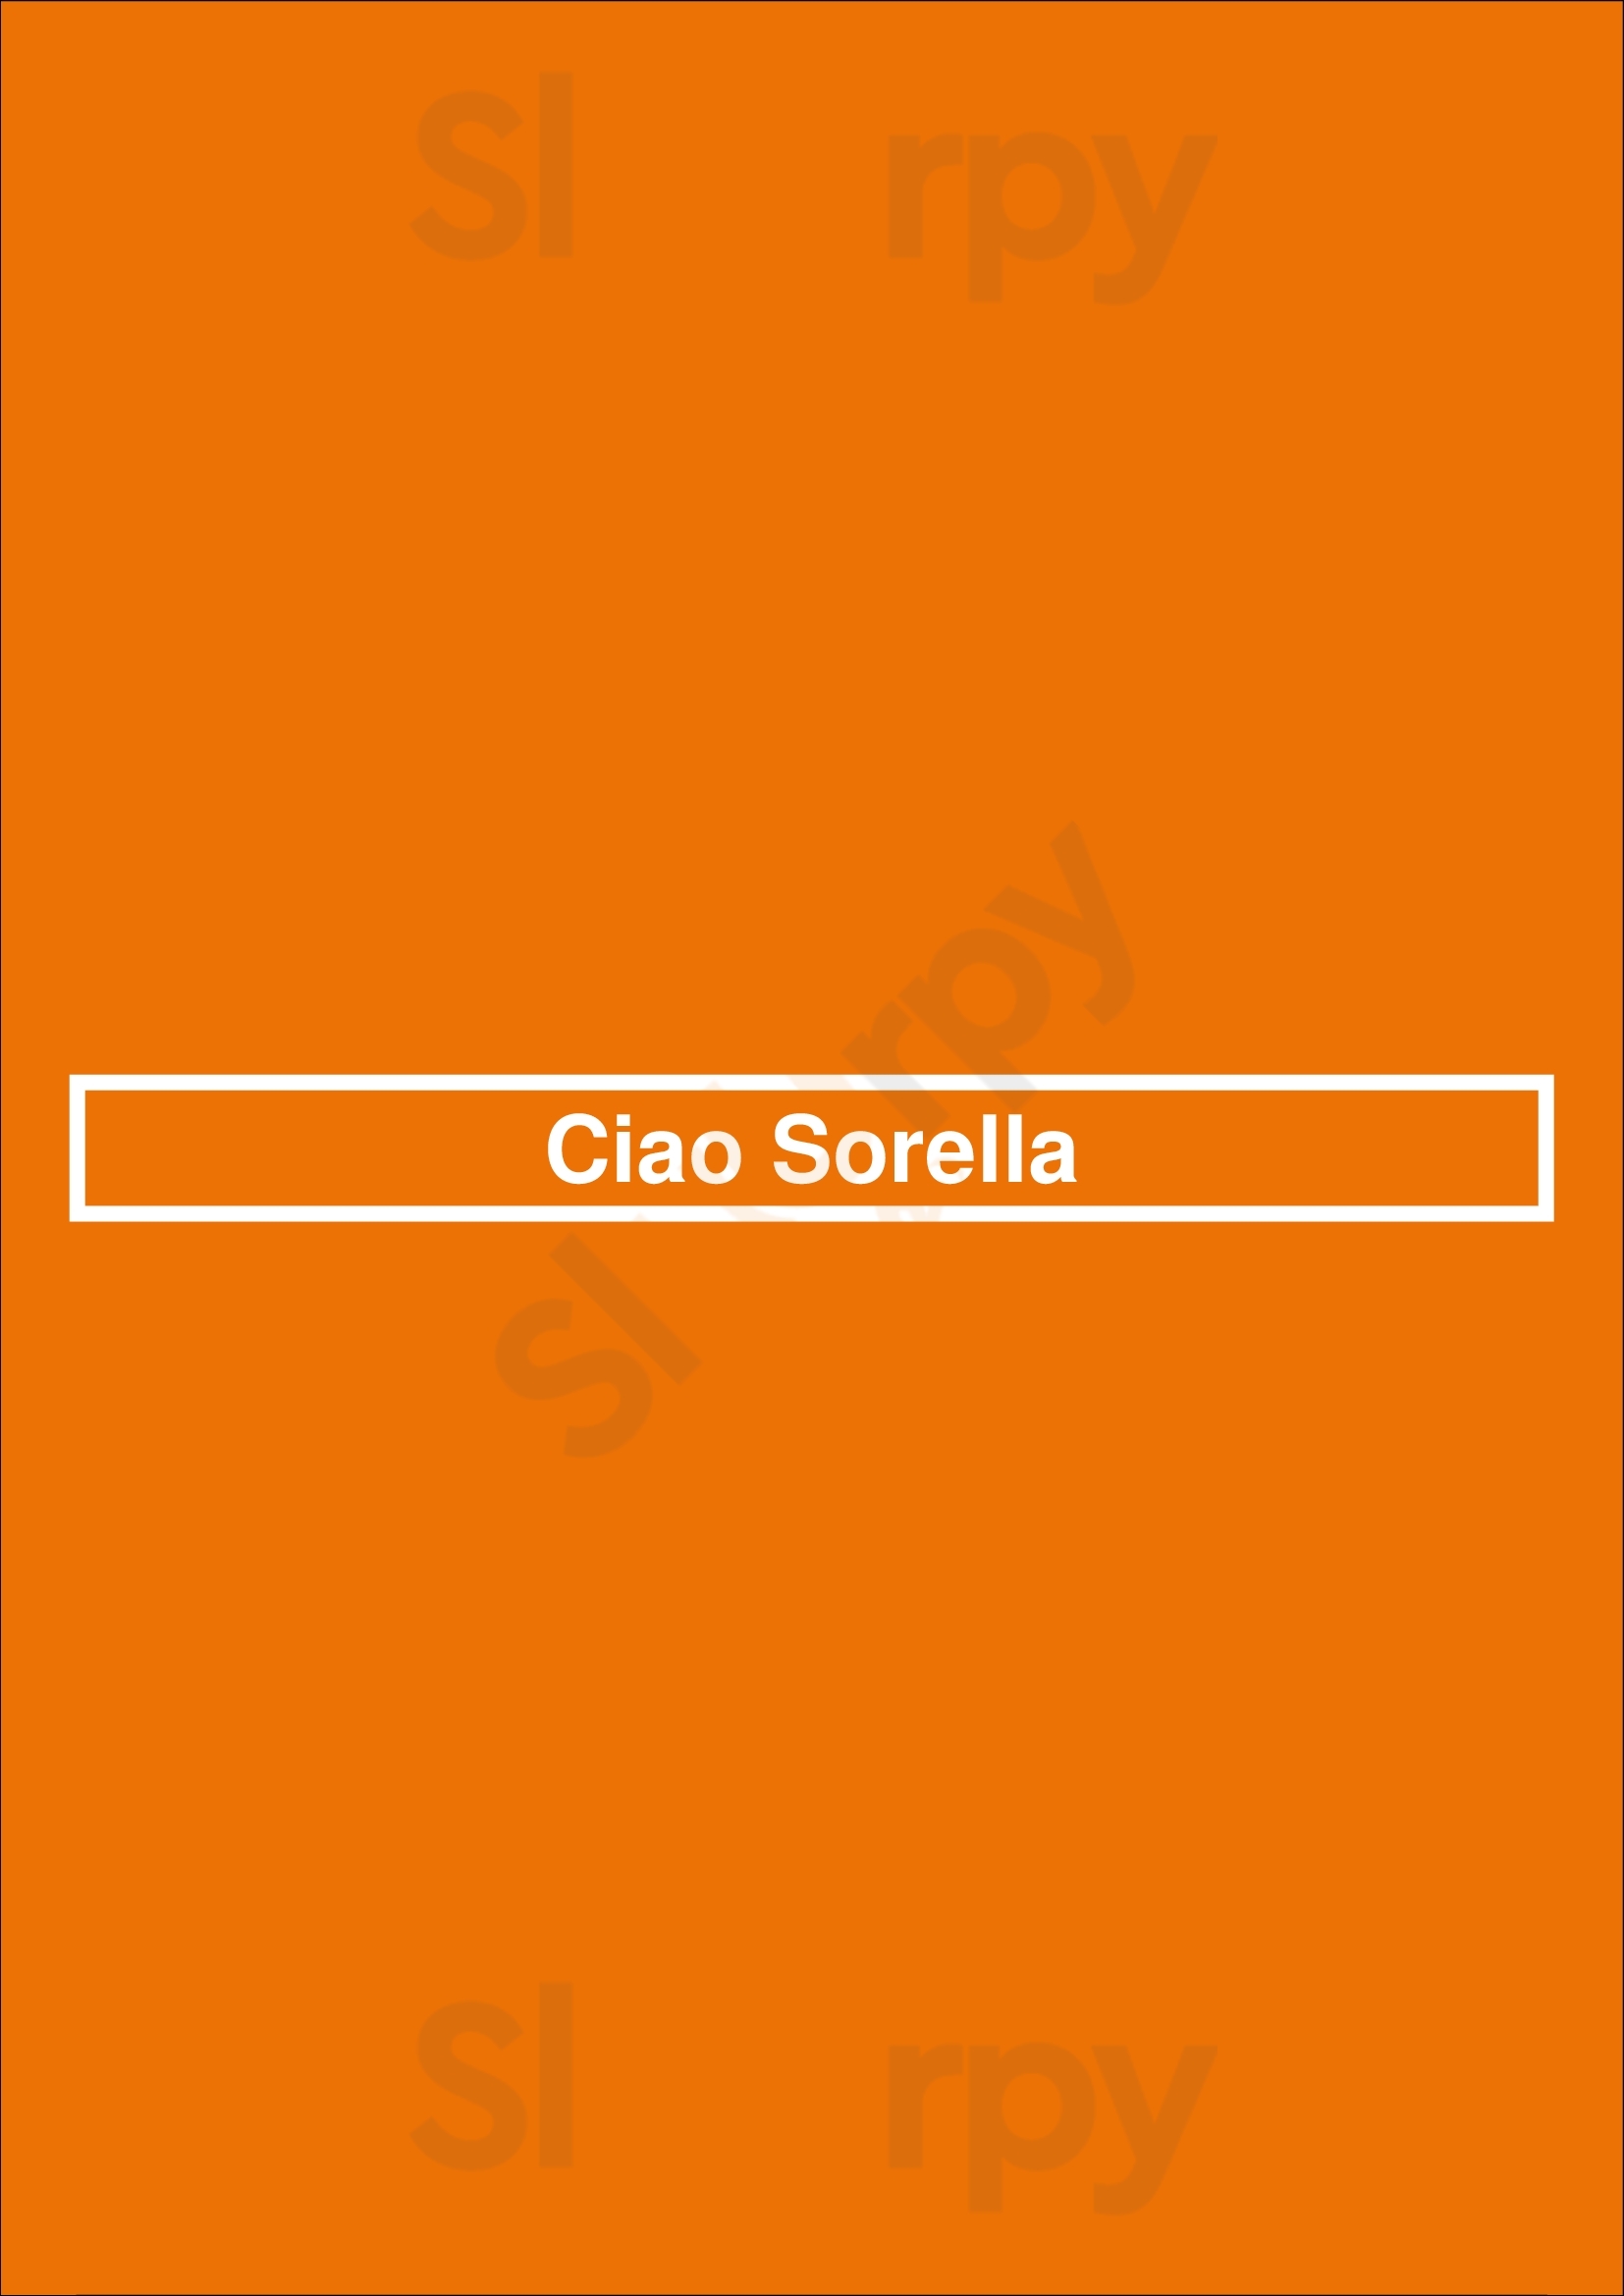 Ciao Sorella Diemen Menu - 1